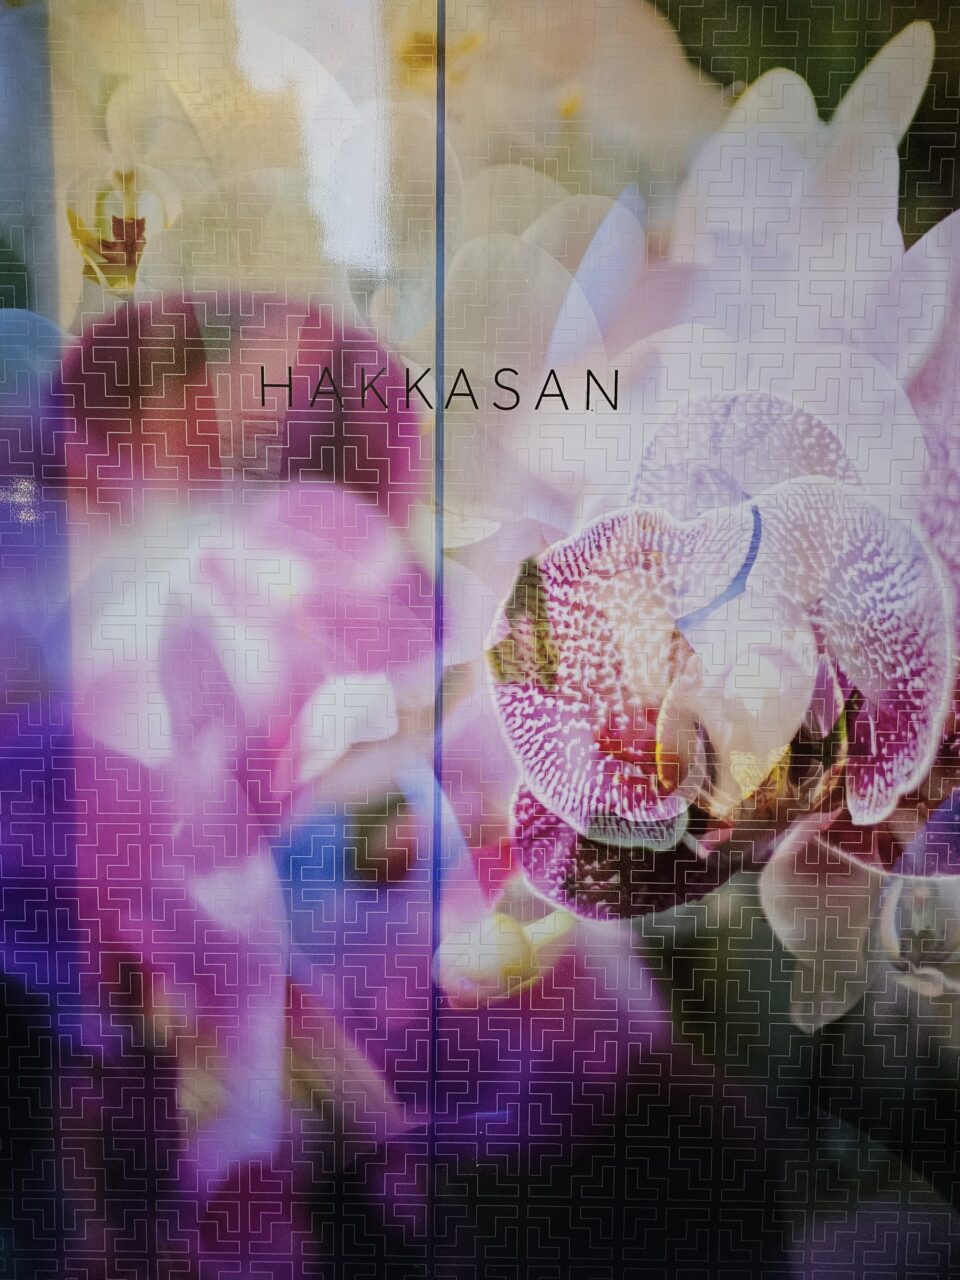 Vakkert blomstertrykk med teksten "Hakkasan". Foto